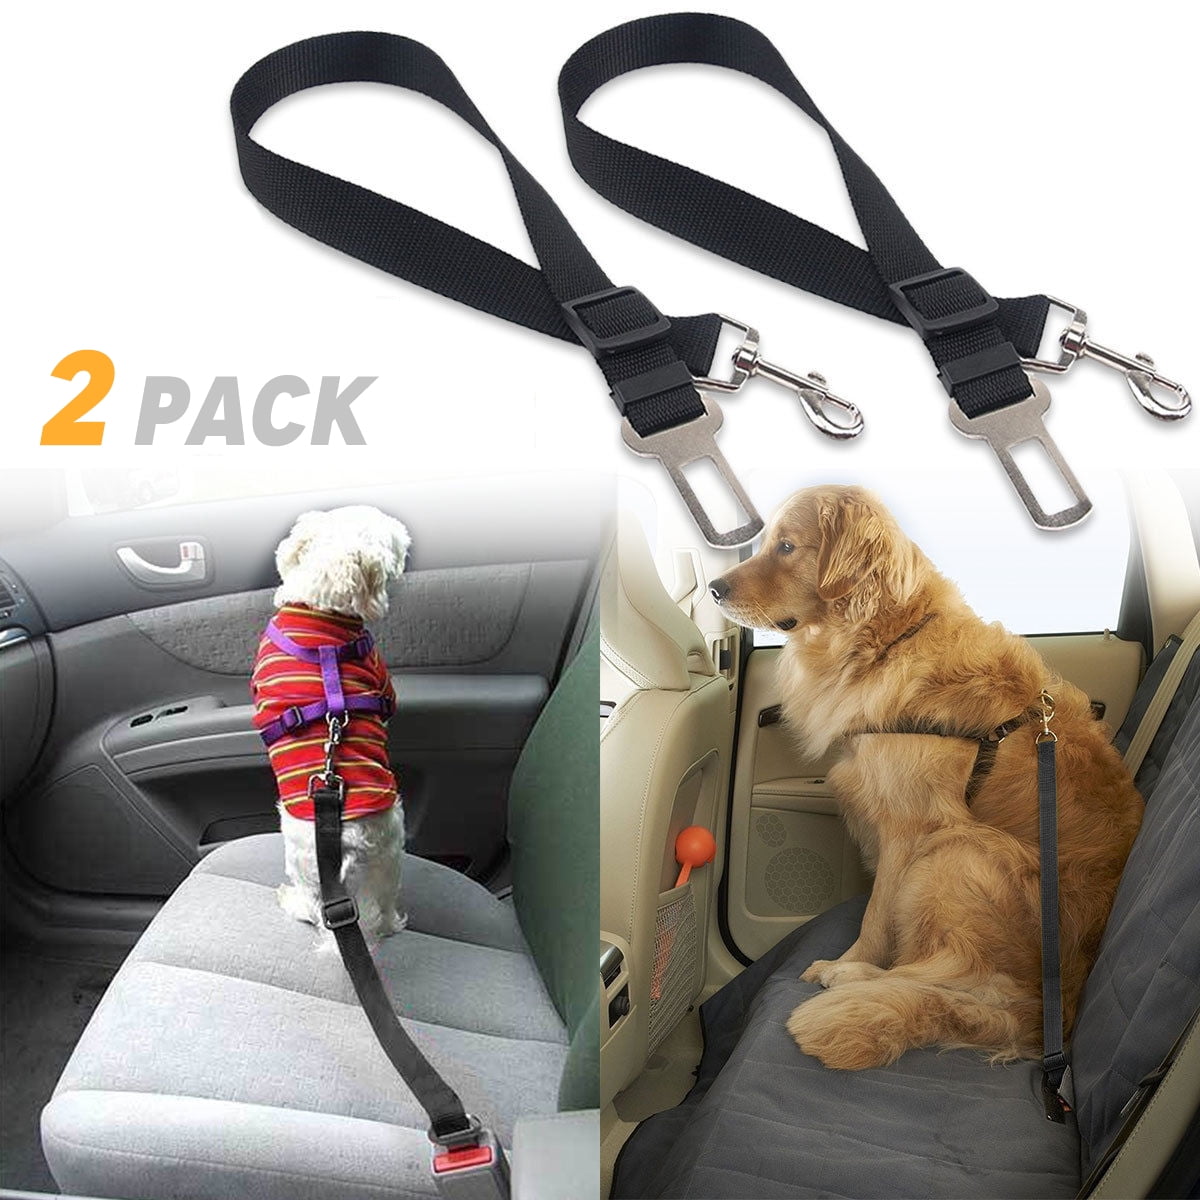 Anti-shock Dog Car Seat Belt Safety Adjustable Pet seat belt Safety Seat Belt For Dog Cat and Pets BLACK MAIN Dog Seat Belts For Cars Adjustable